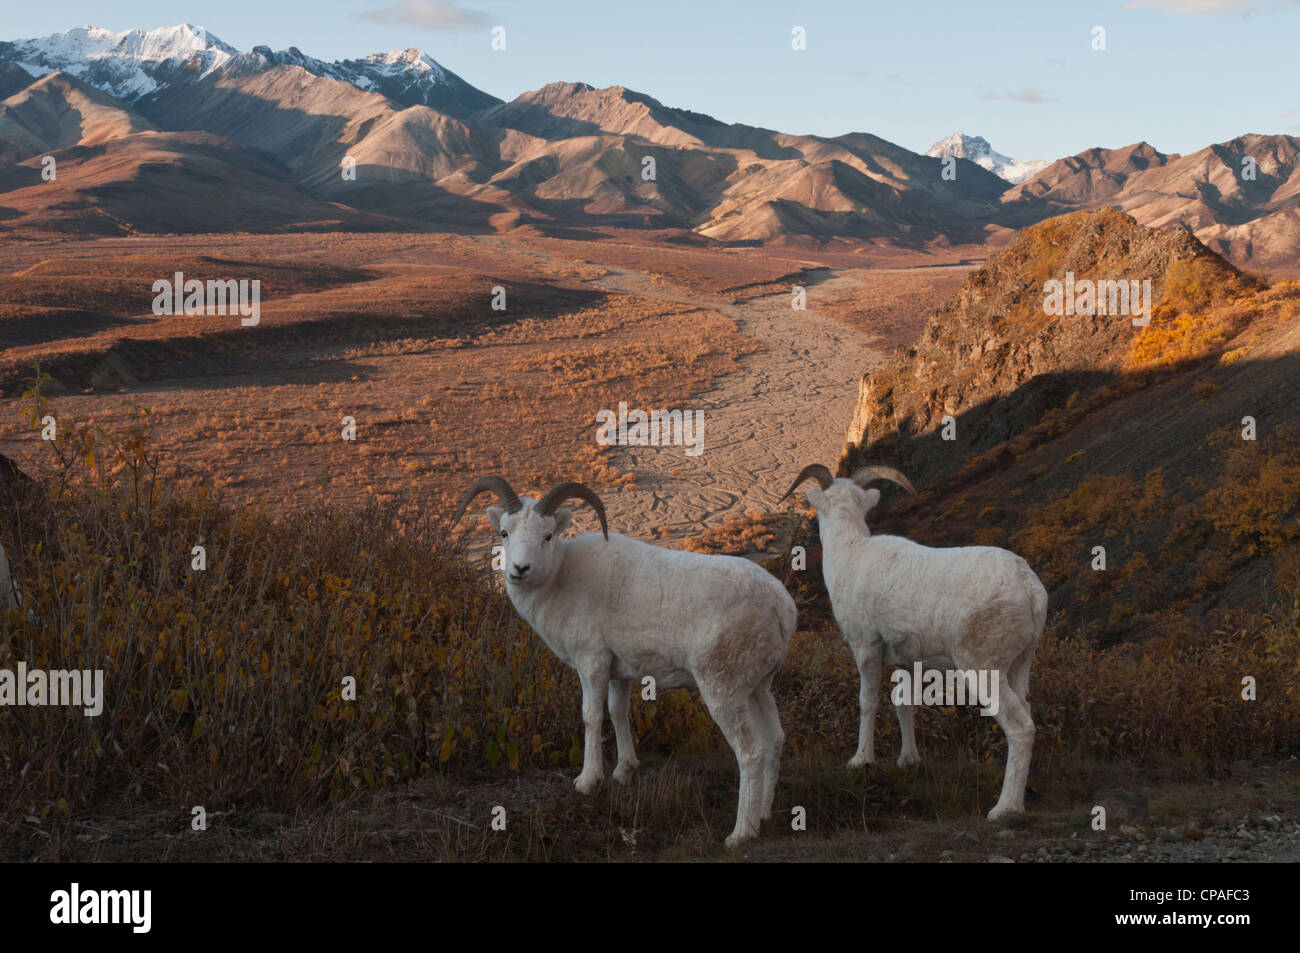 Le mouflon de Dall (Ovis dalli) Les béliers, Les collines polychrome, l'Alaska et la vallée. Le Parc National Denali, Alaska Banque D'Images